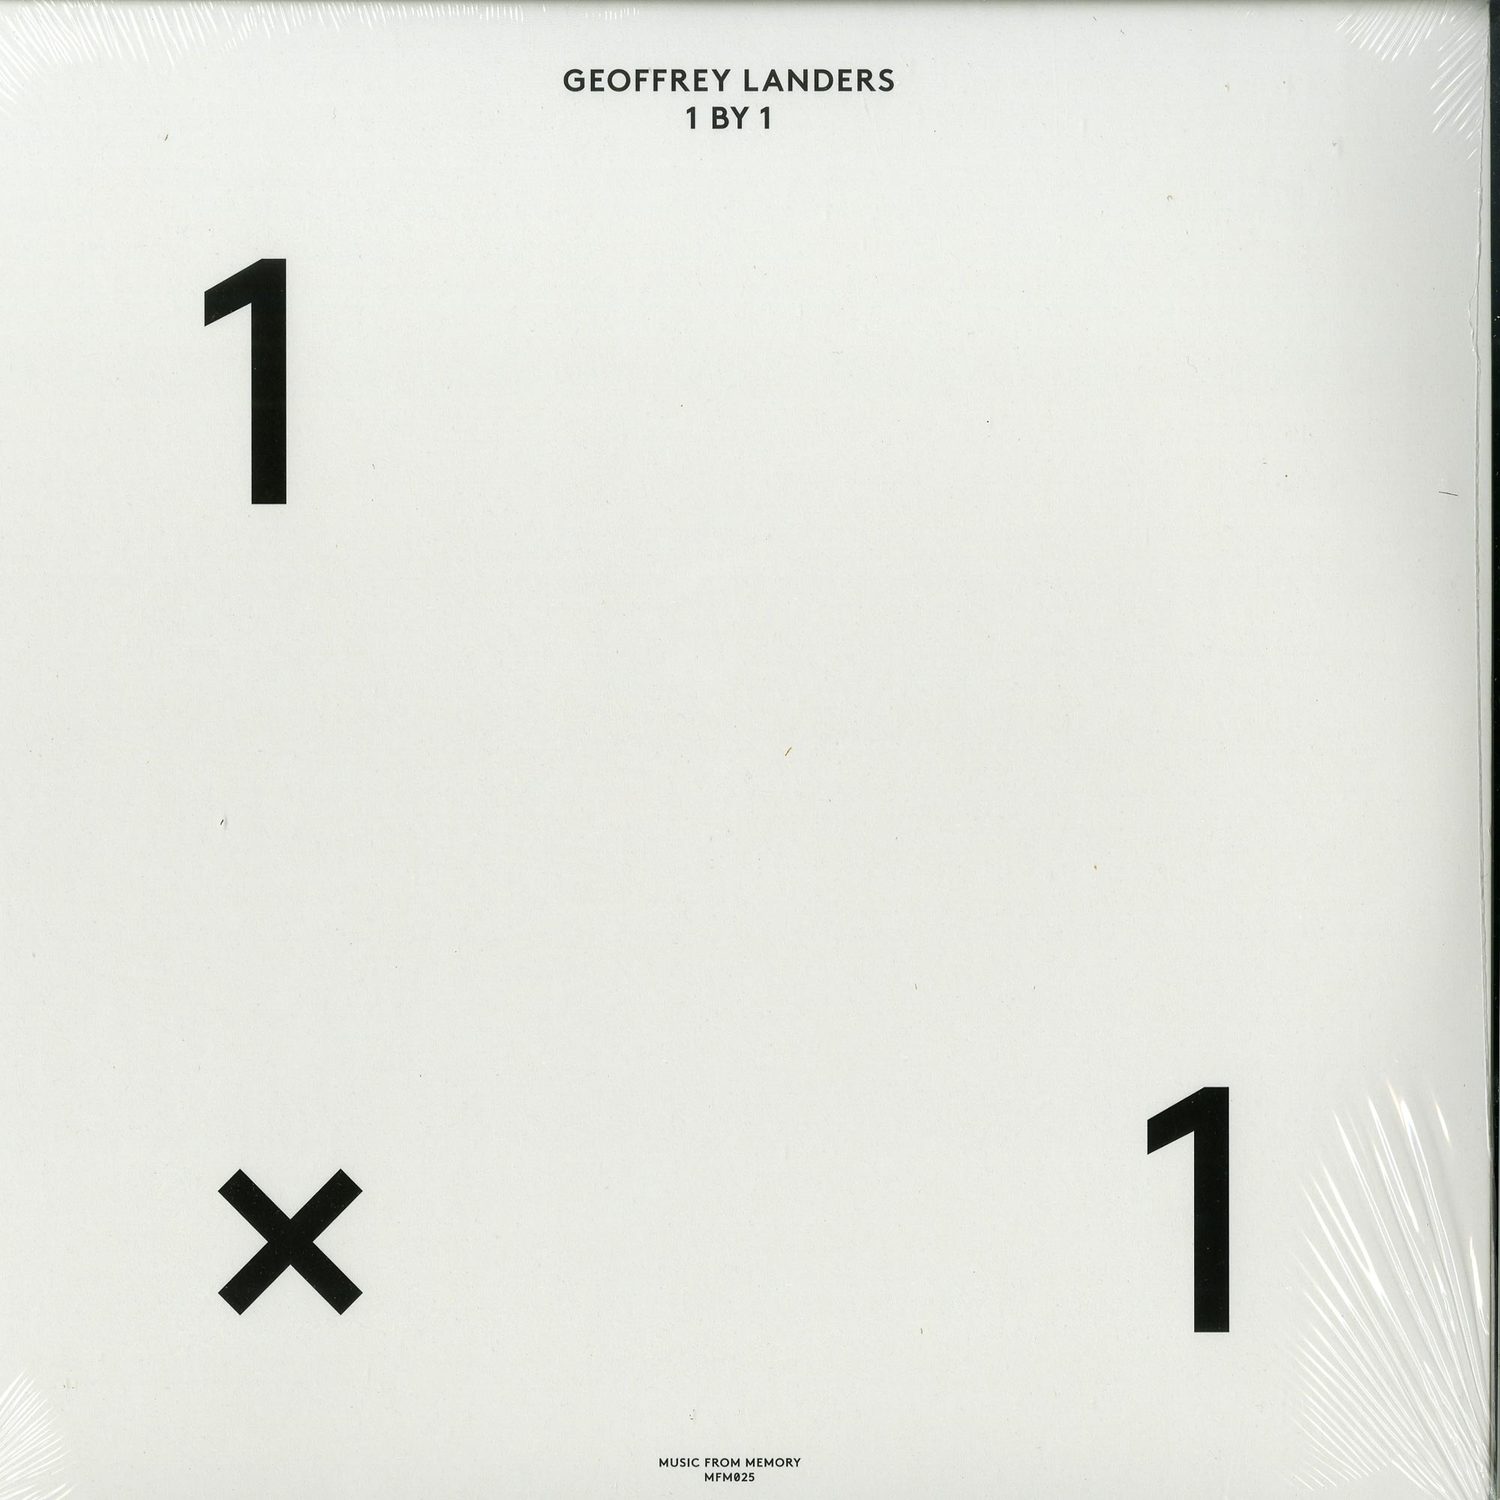 Geoffrey Landers - 1 BY 1 